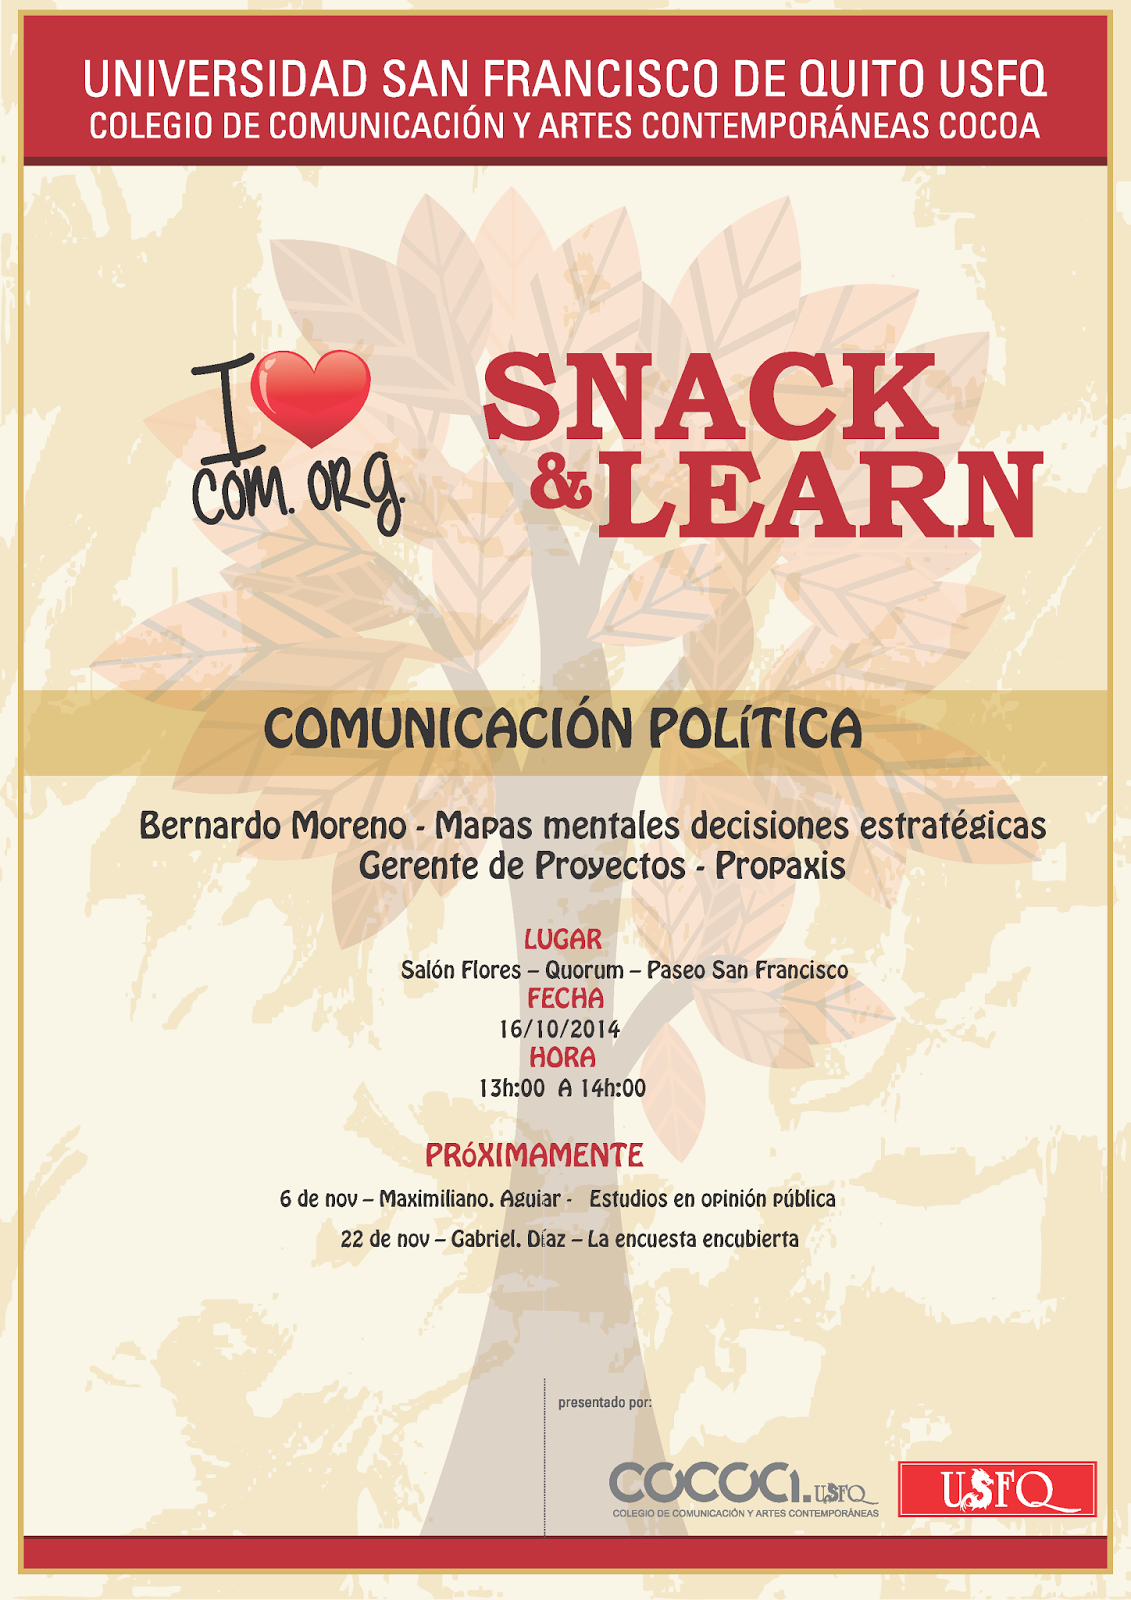 Tercera conferencia de Snack & Learn: "Mapas mentales decisiones estratégicas". 16 octubre, 13h00, Salón Flores-Quorum